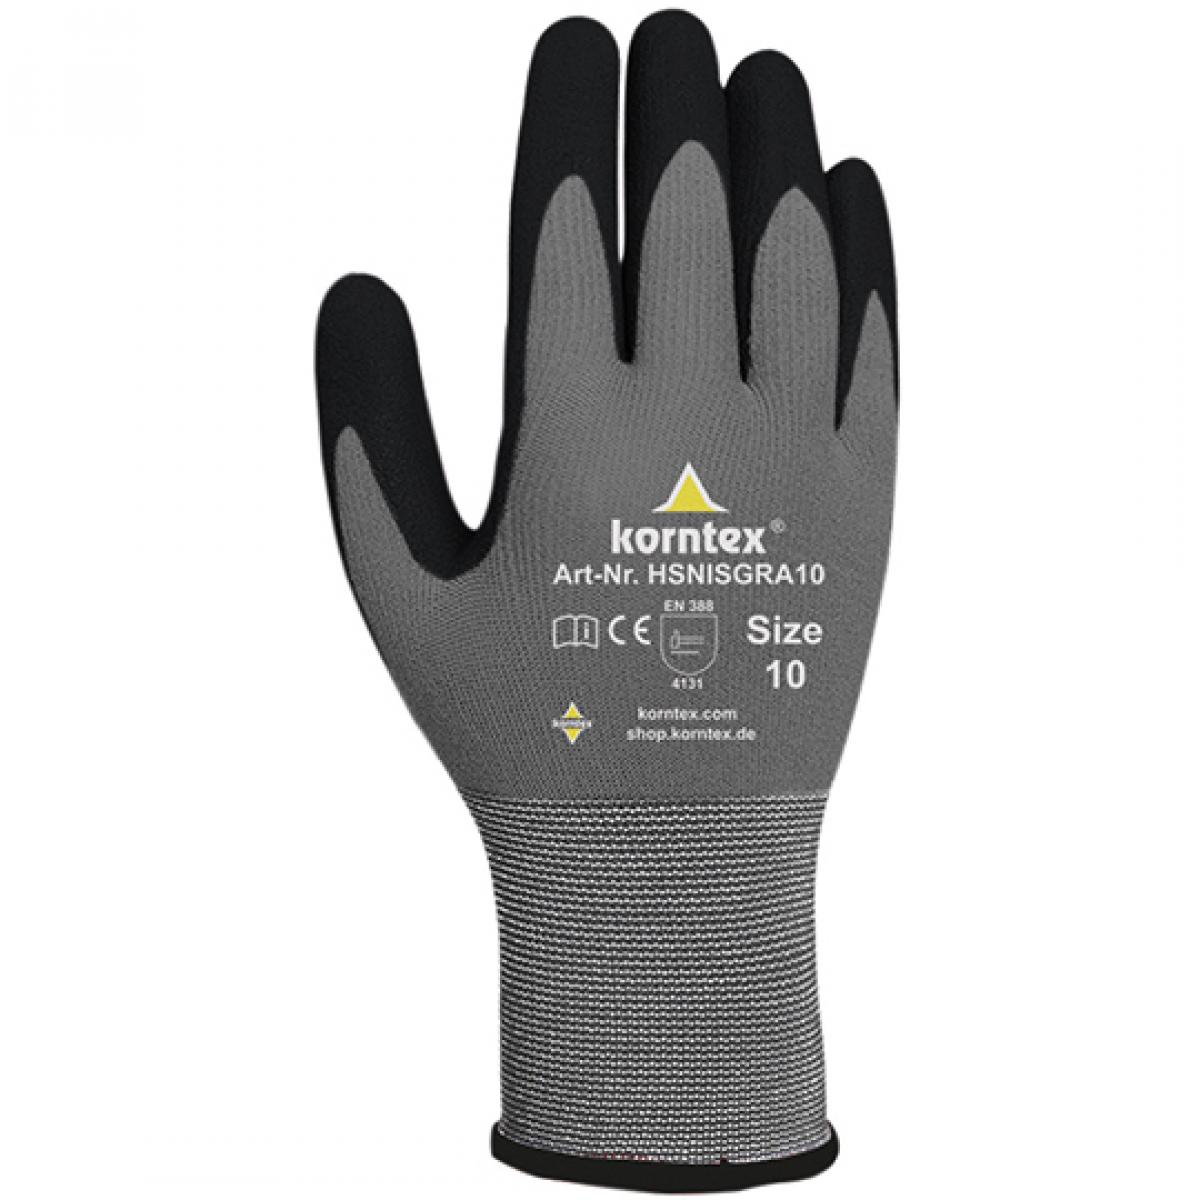 Hersteller: Korntex Herstellernummer: HSNIS Artikelbezeichnung: Nitrile Foam Glove Farbe: Black/Grey